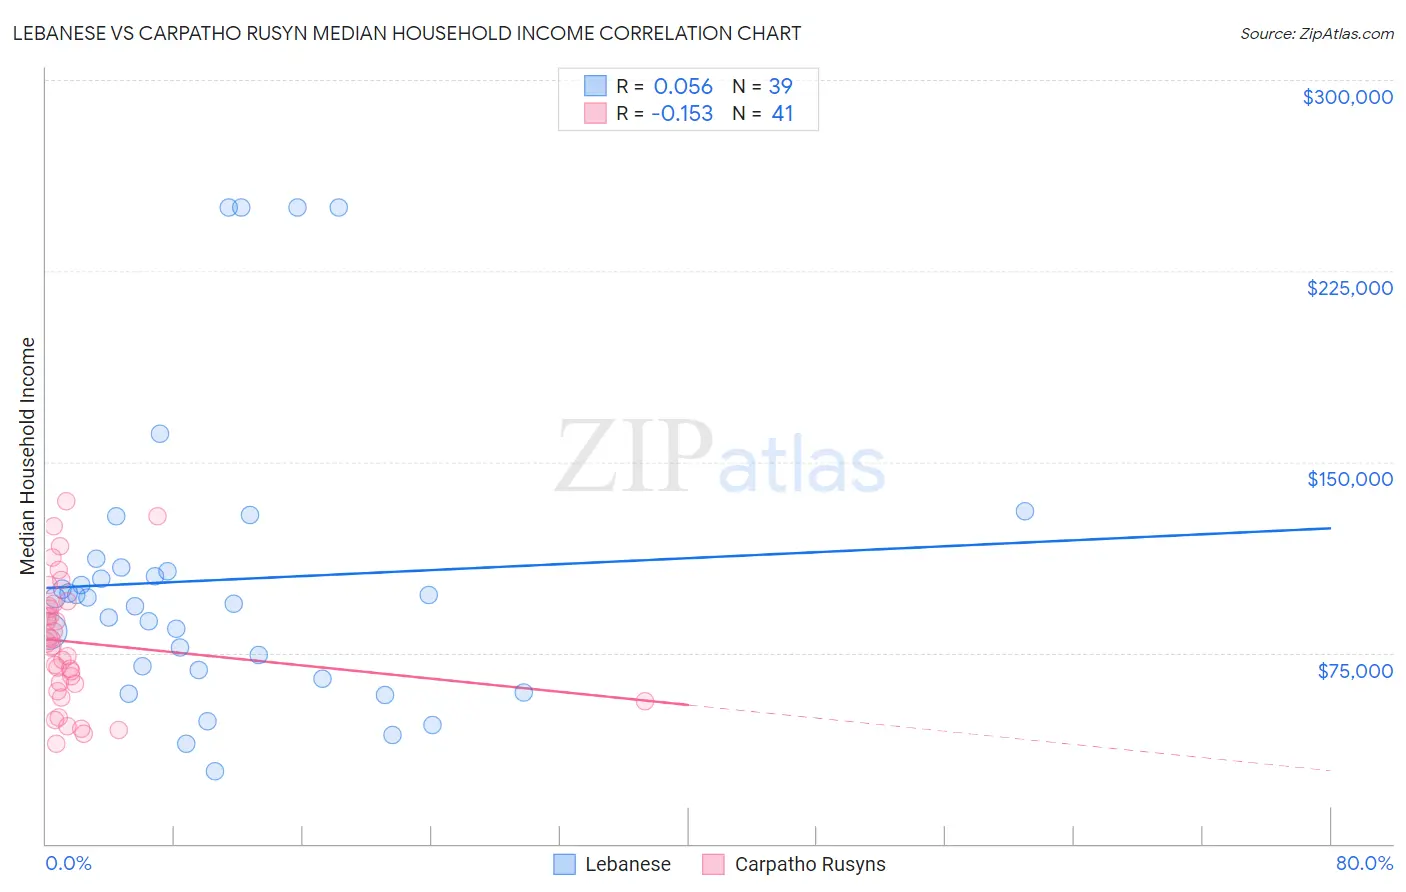 Lebanese vs Carpatho Rusyn Median Household Income